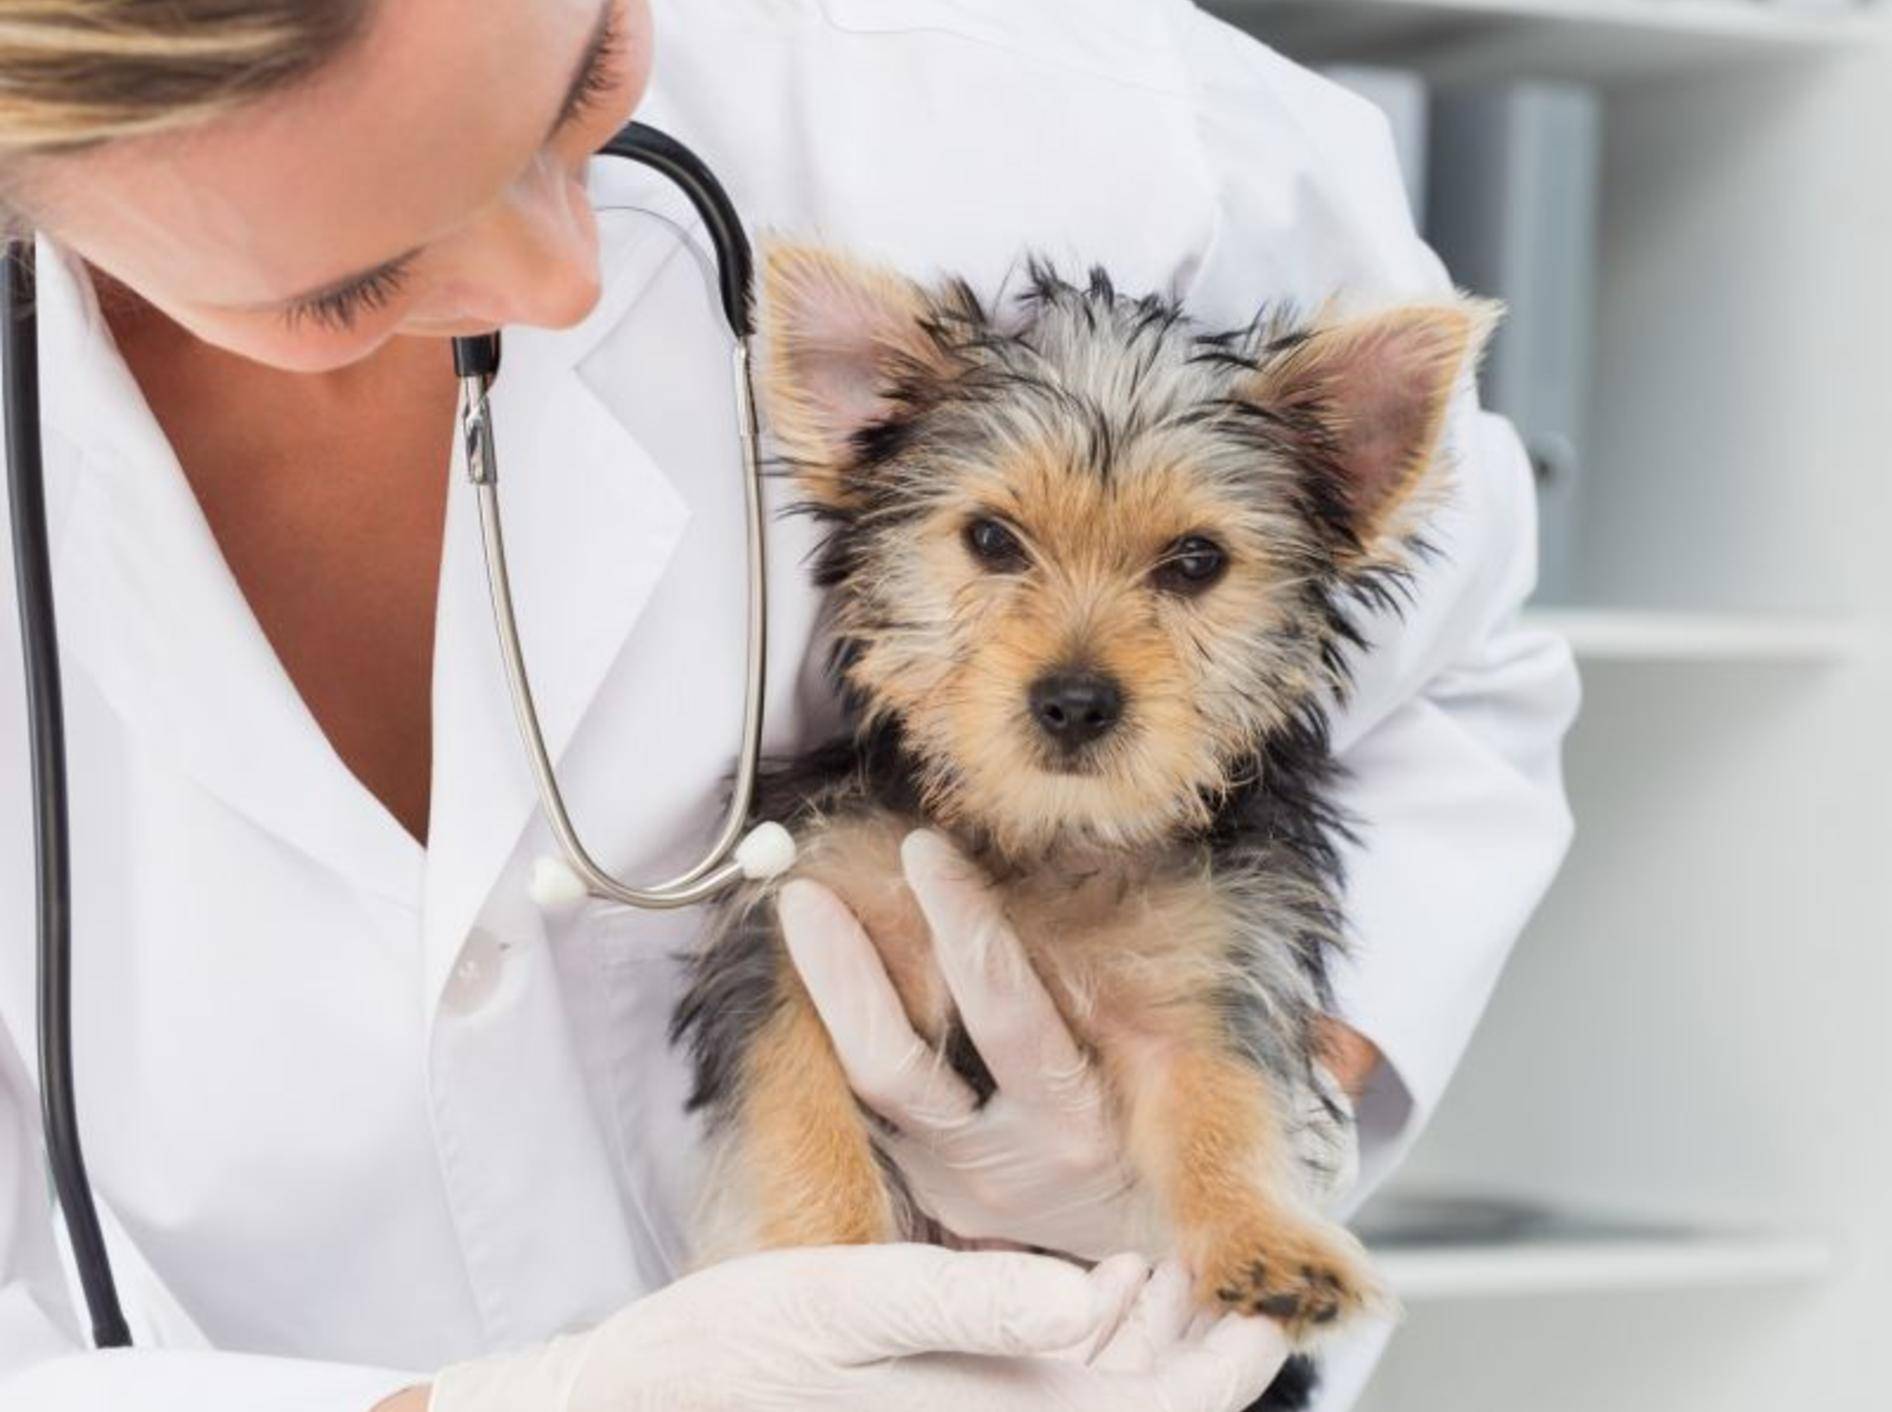 Haarlinge beim Hund: Die Behandlung übernimmt der Tierarzt – Bild: Shutterstock / wavebreakmedia